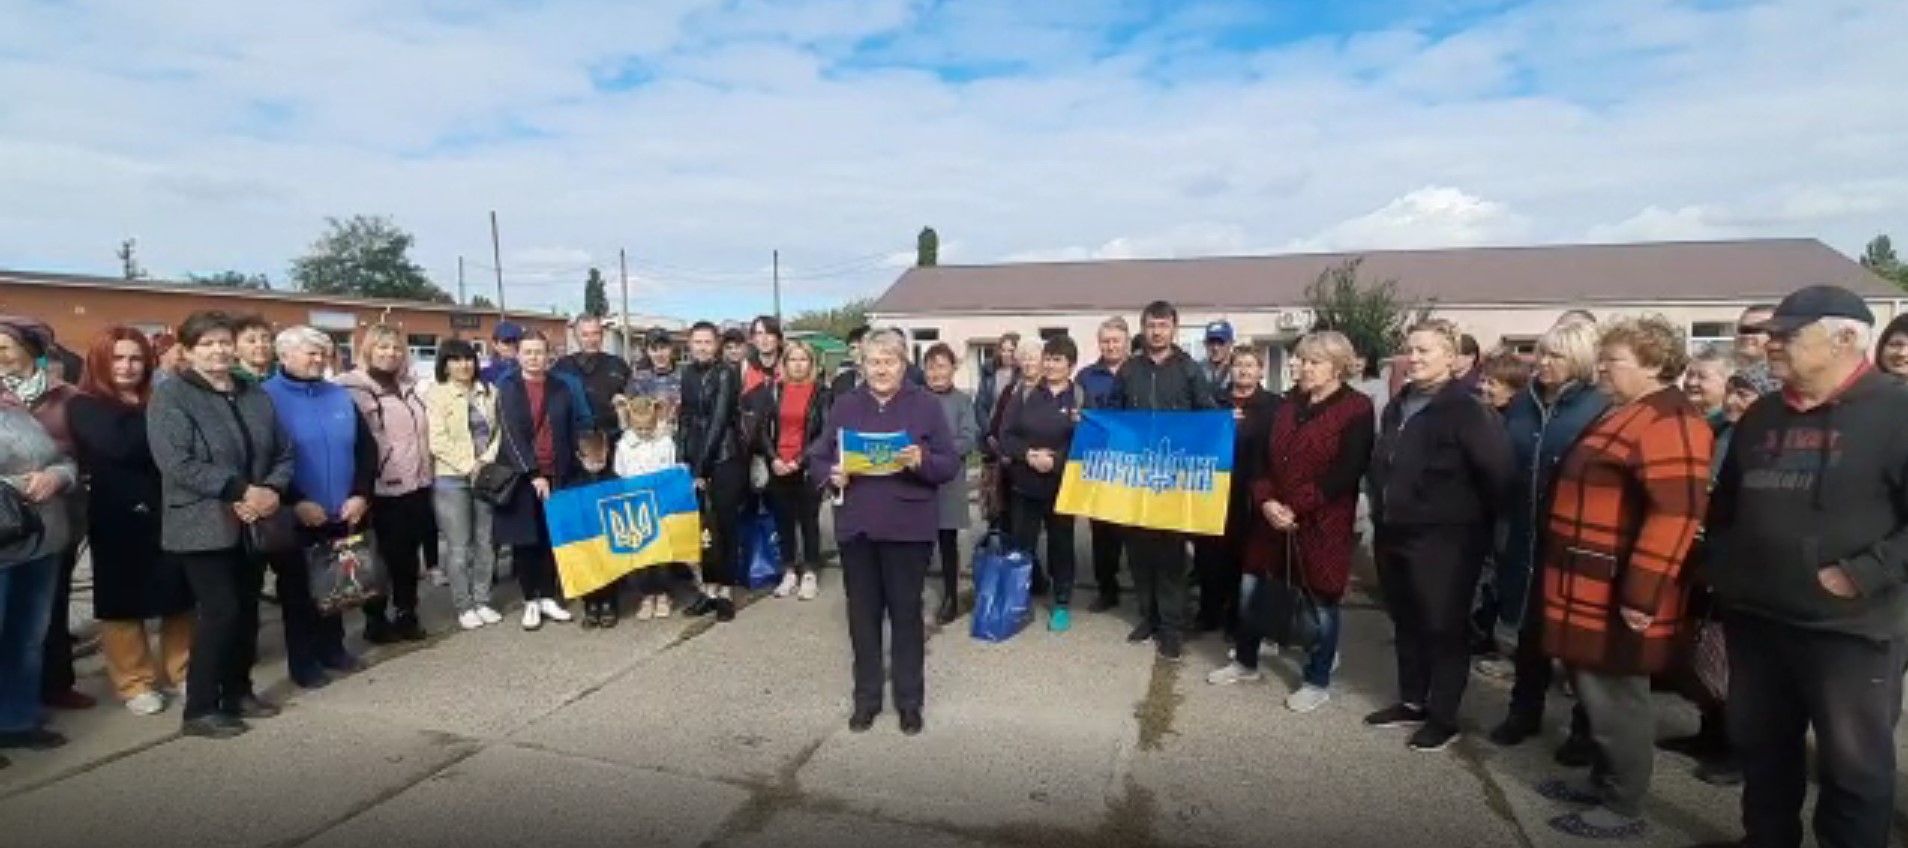 Як українці протестують проти псевдореферендуму - переселенці зі Снігурівки вийшли на протест